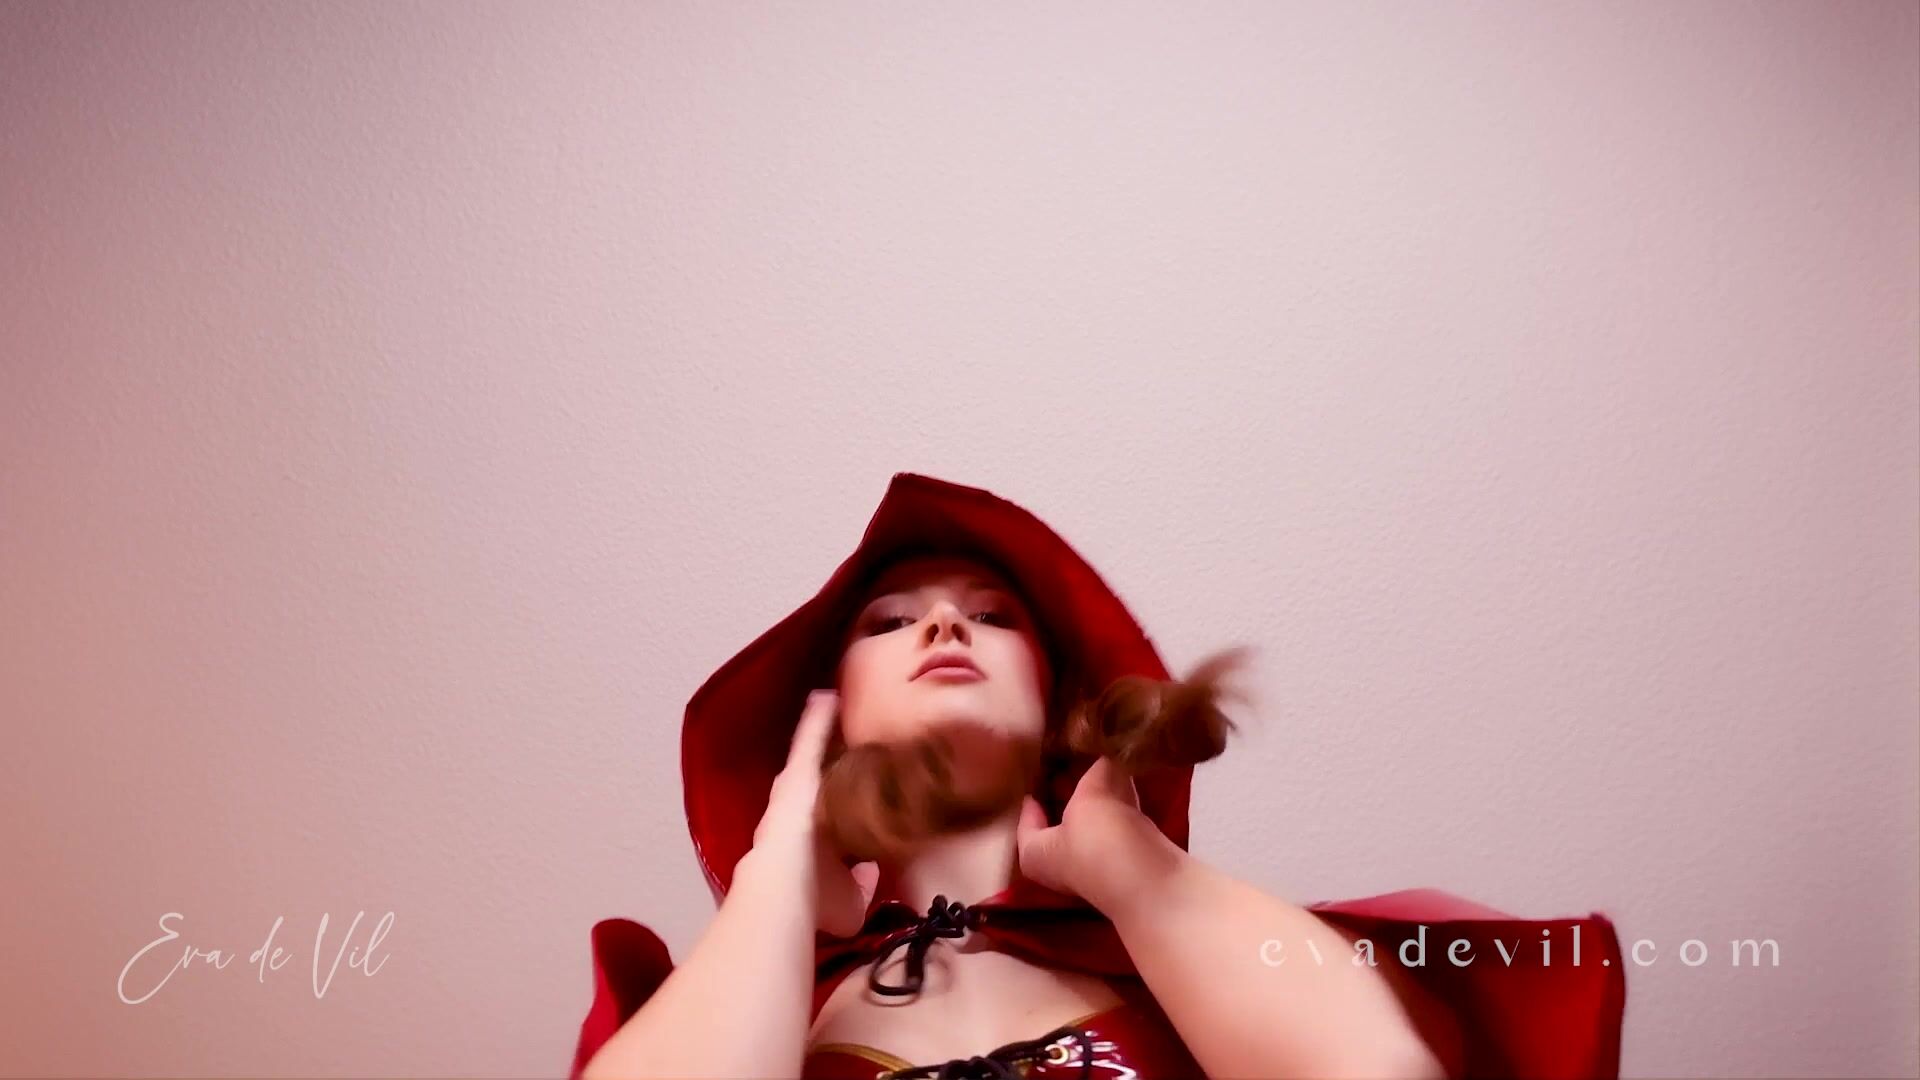 Red rides your face - Eva De Vil